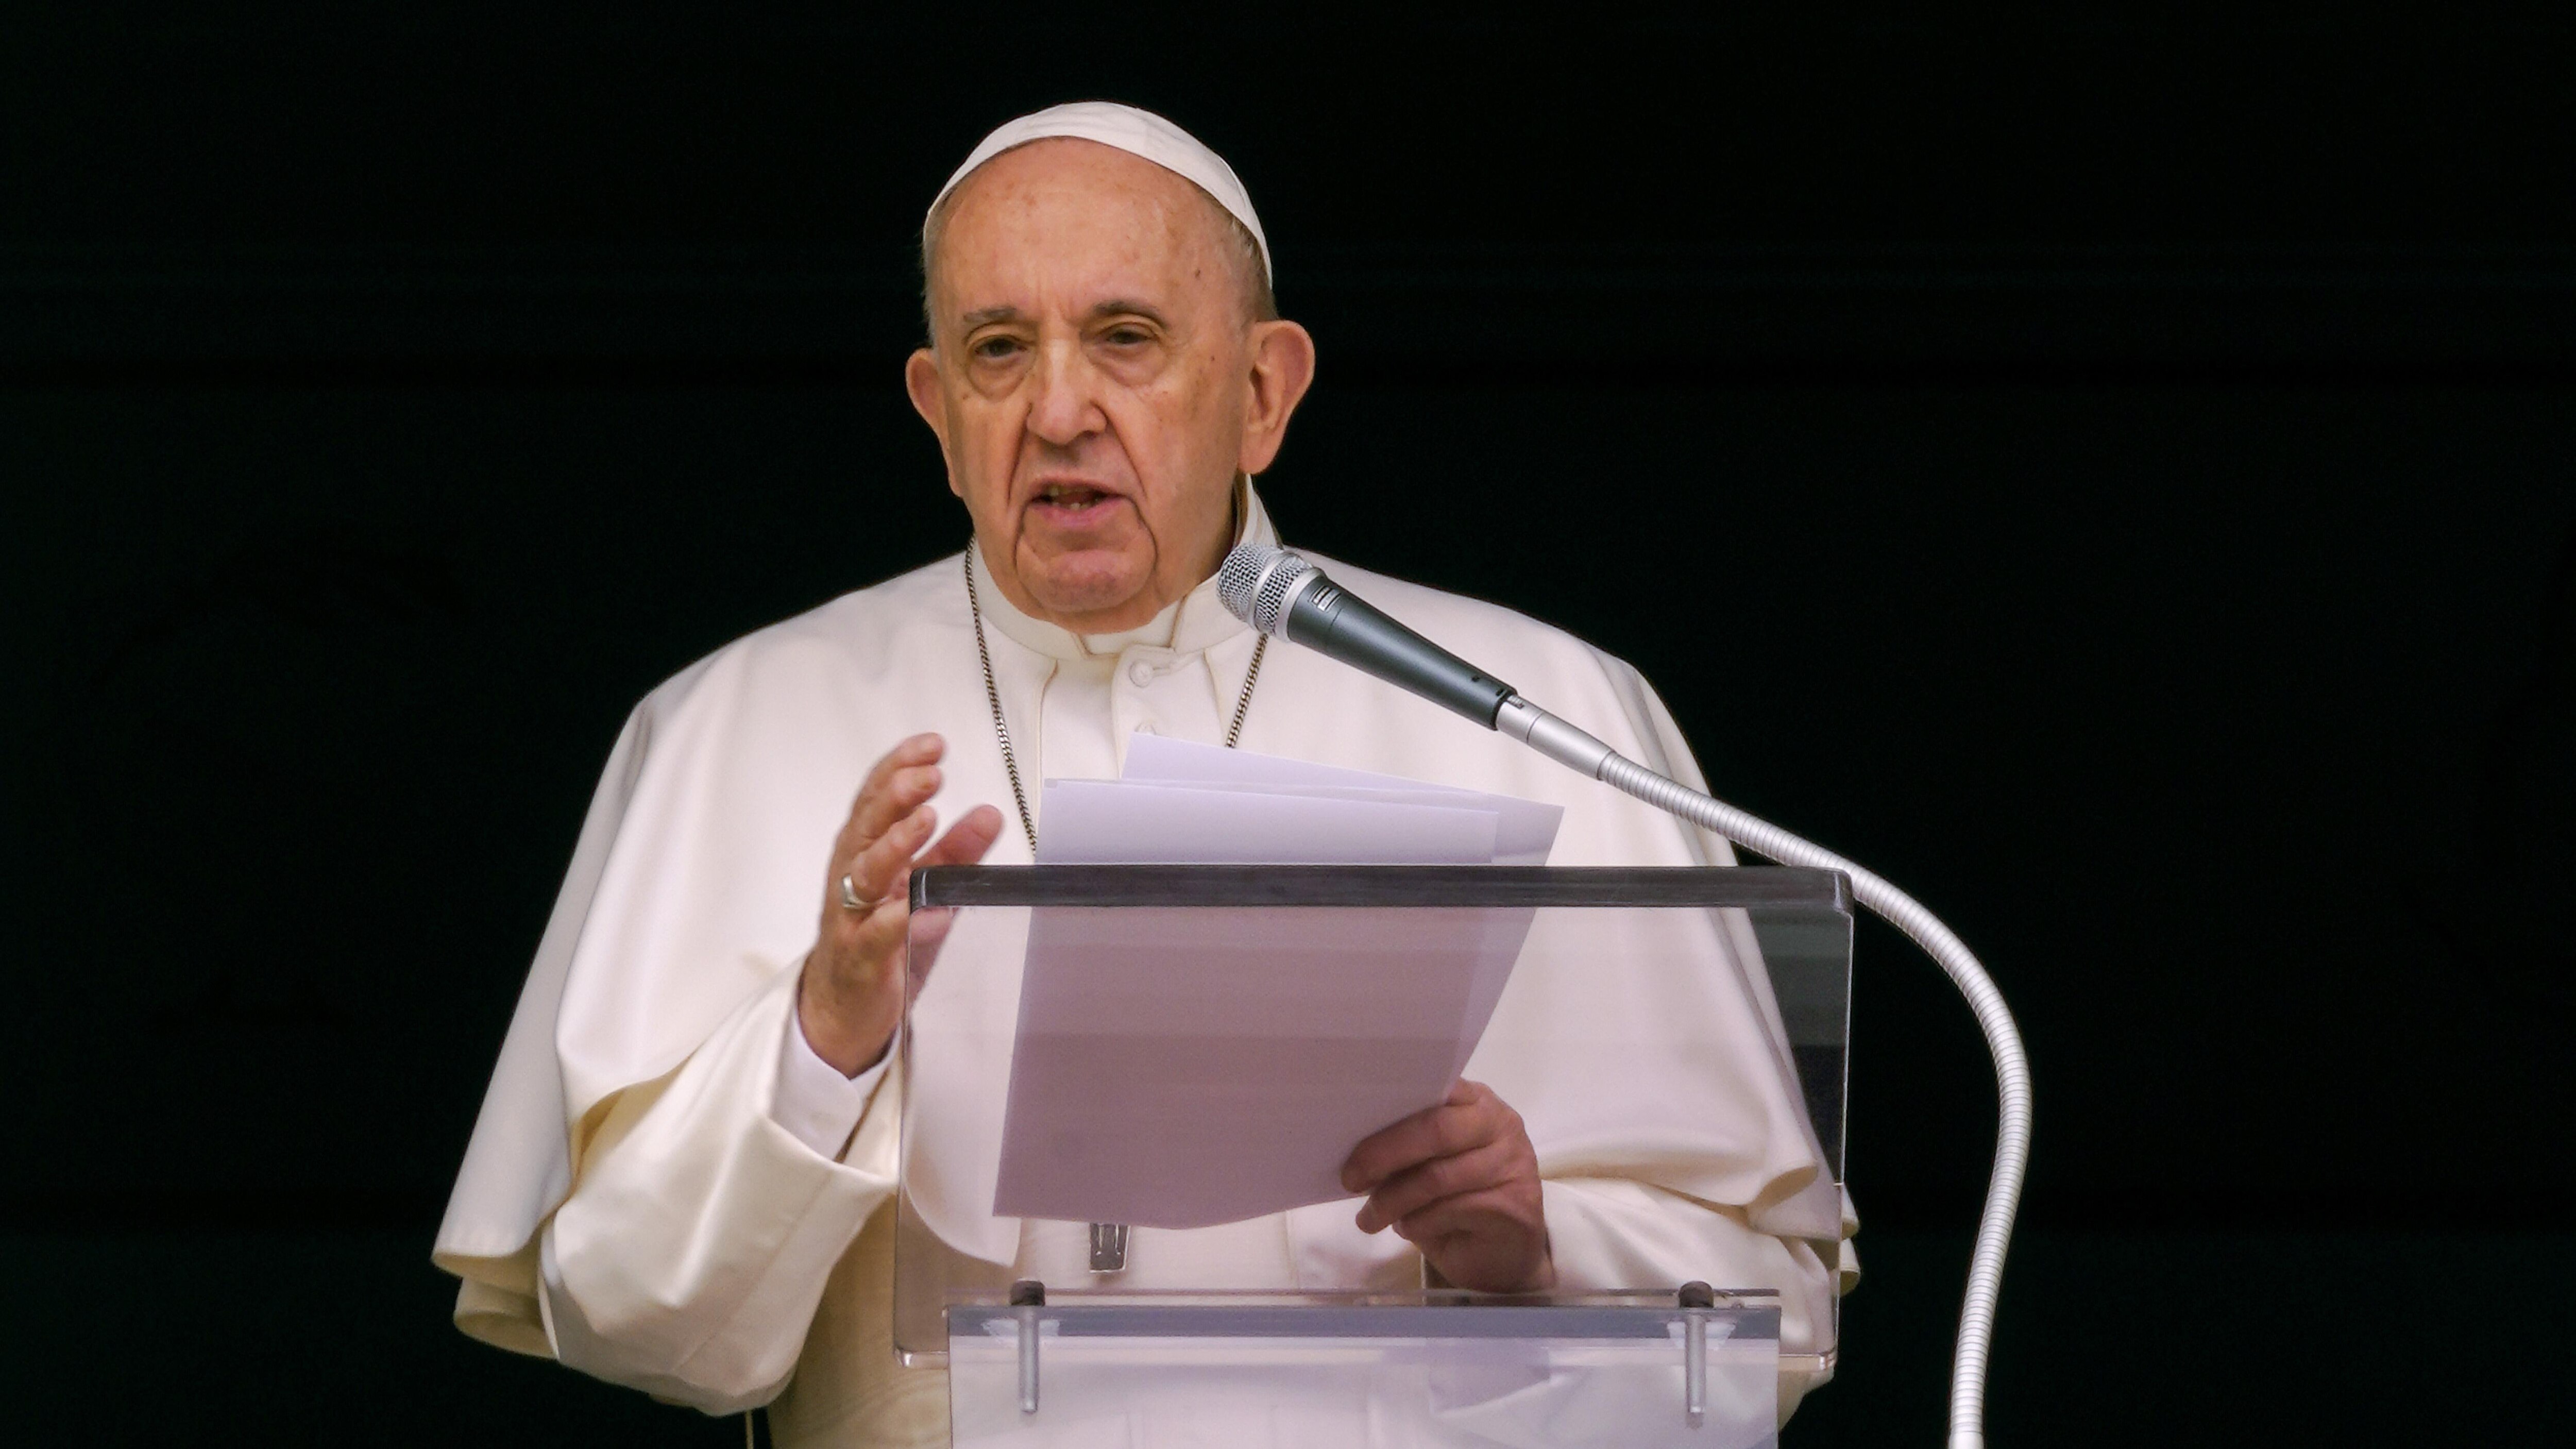 Le pape François annonce vouloir rencontrer les Premières Nations au Canada
Le pape François annonce vouloir rencontrer les Premières Nations au Canada